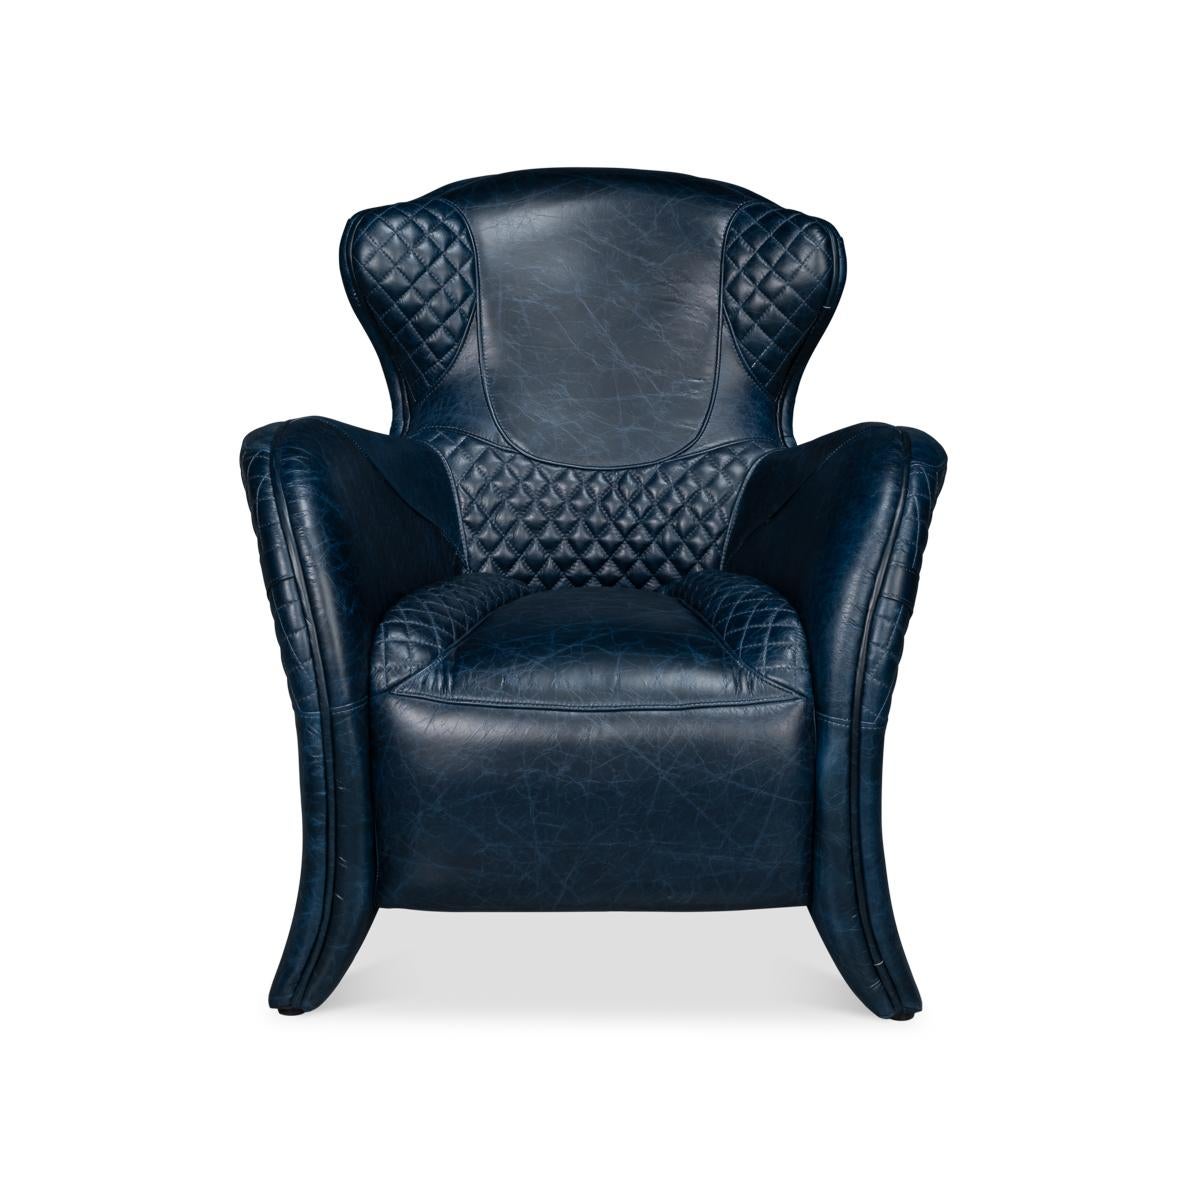 En cuir bleu château de première qualité, avec un dossier incliné et des accoudoirs incurvés, avec une assise et un dossier partiellement matelassés, avec des boucles décoratives.
Dimensions : 31